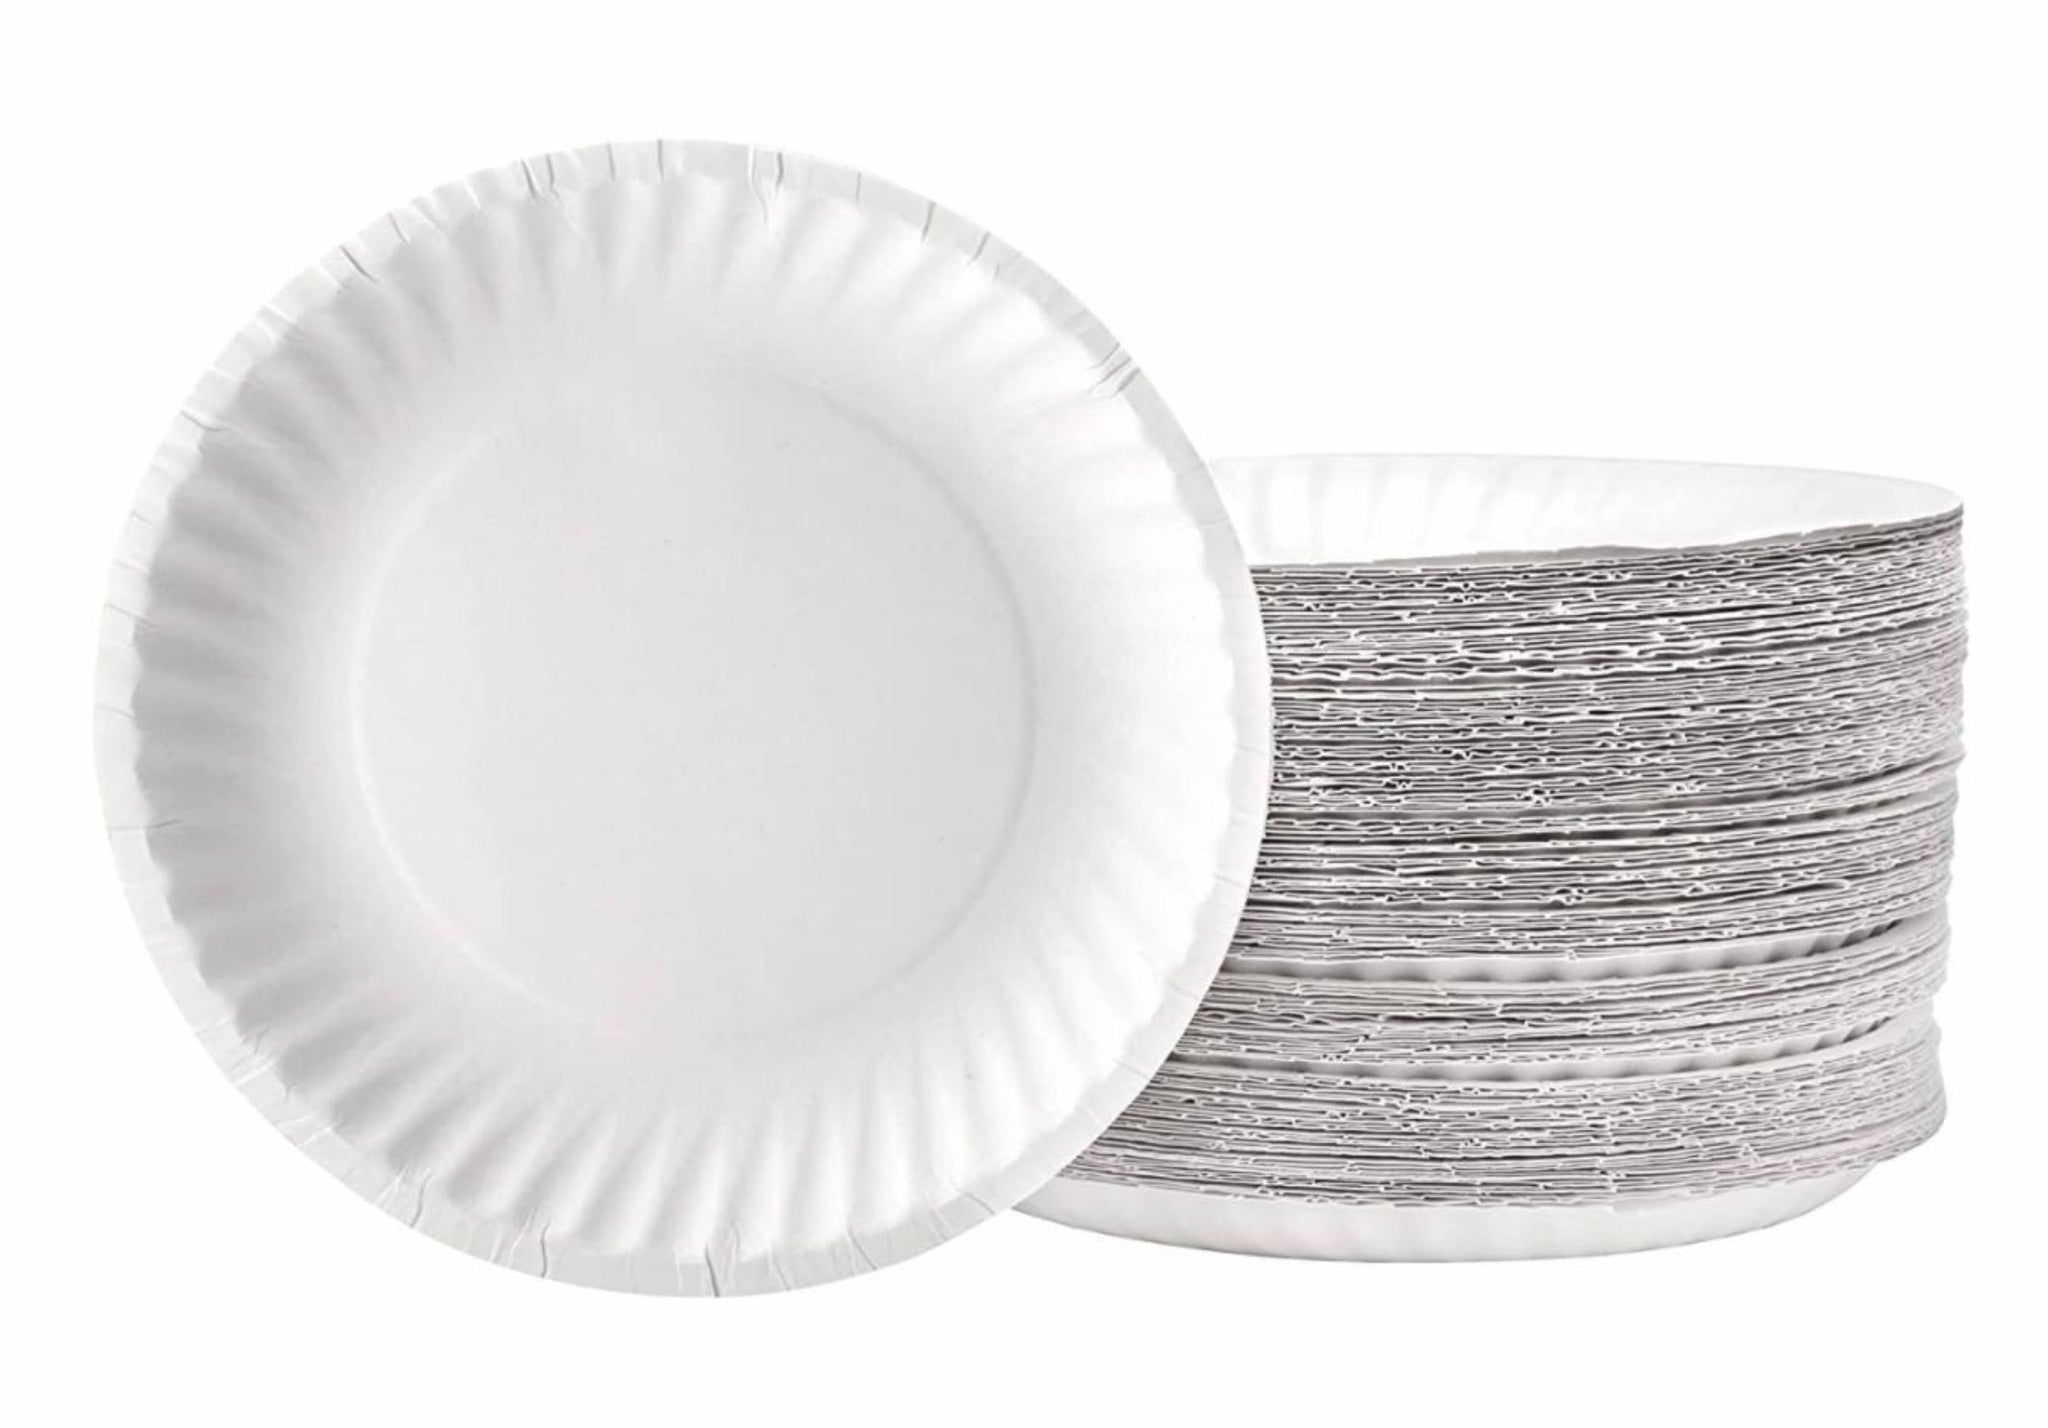 350pcs Compostable Paper Plates Set Eco-friendly Disposable Paper